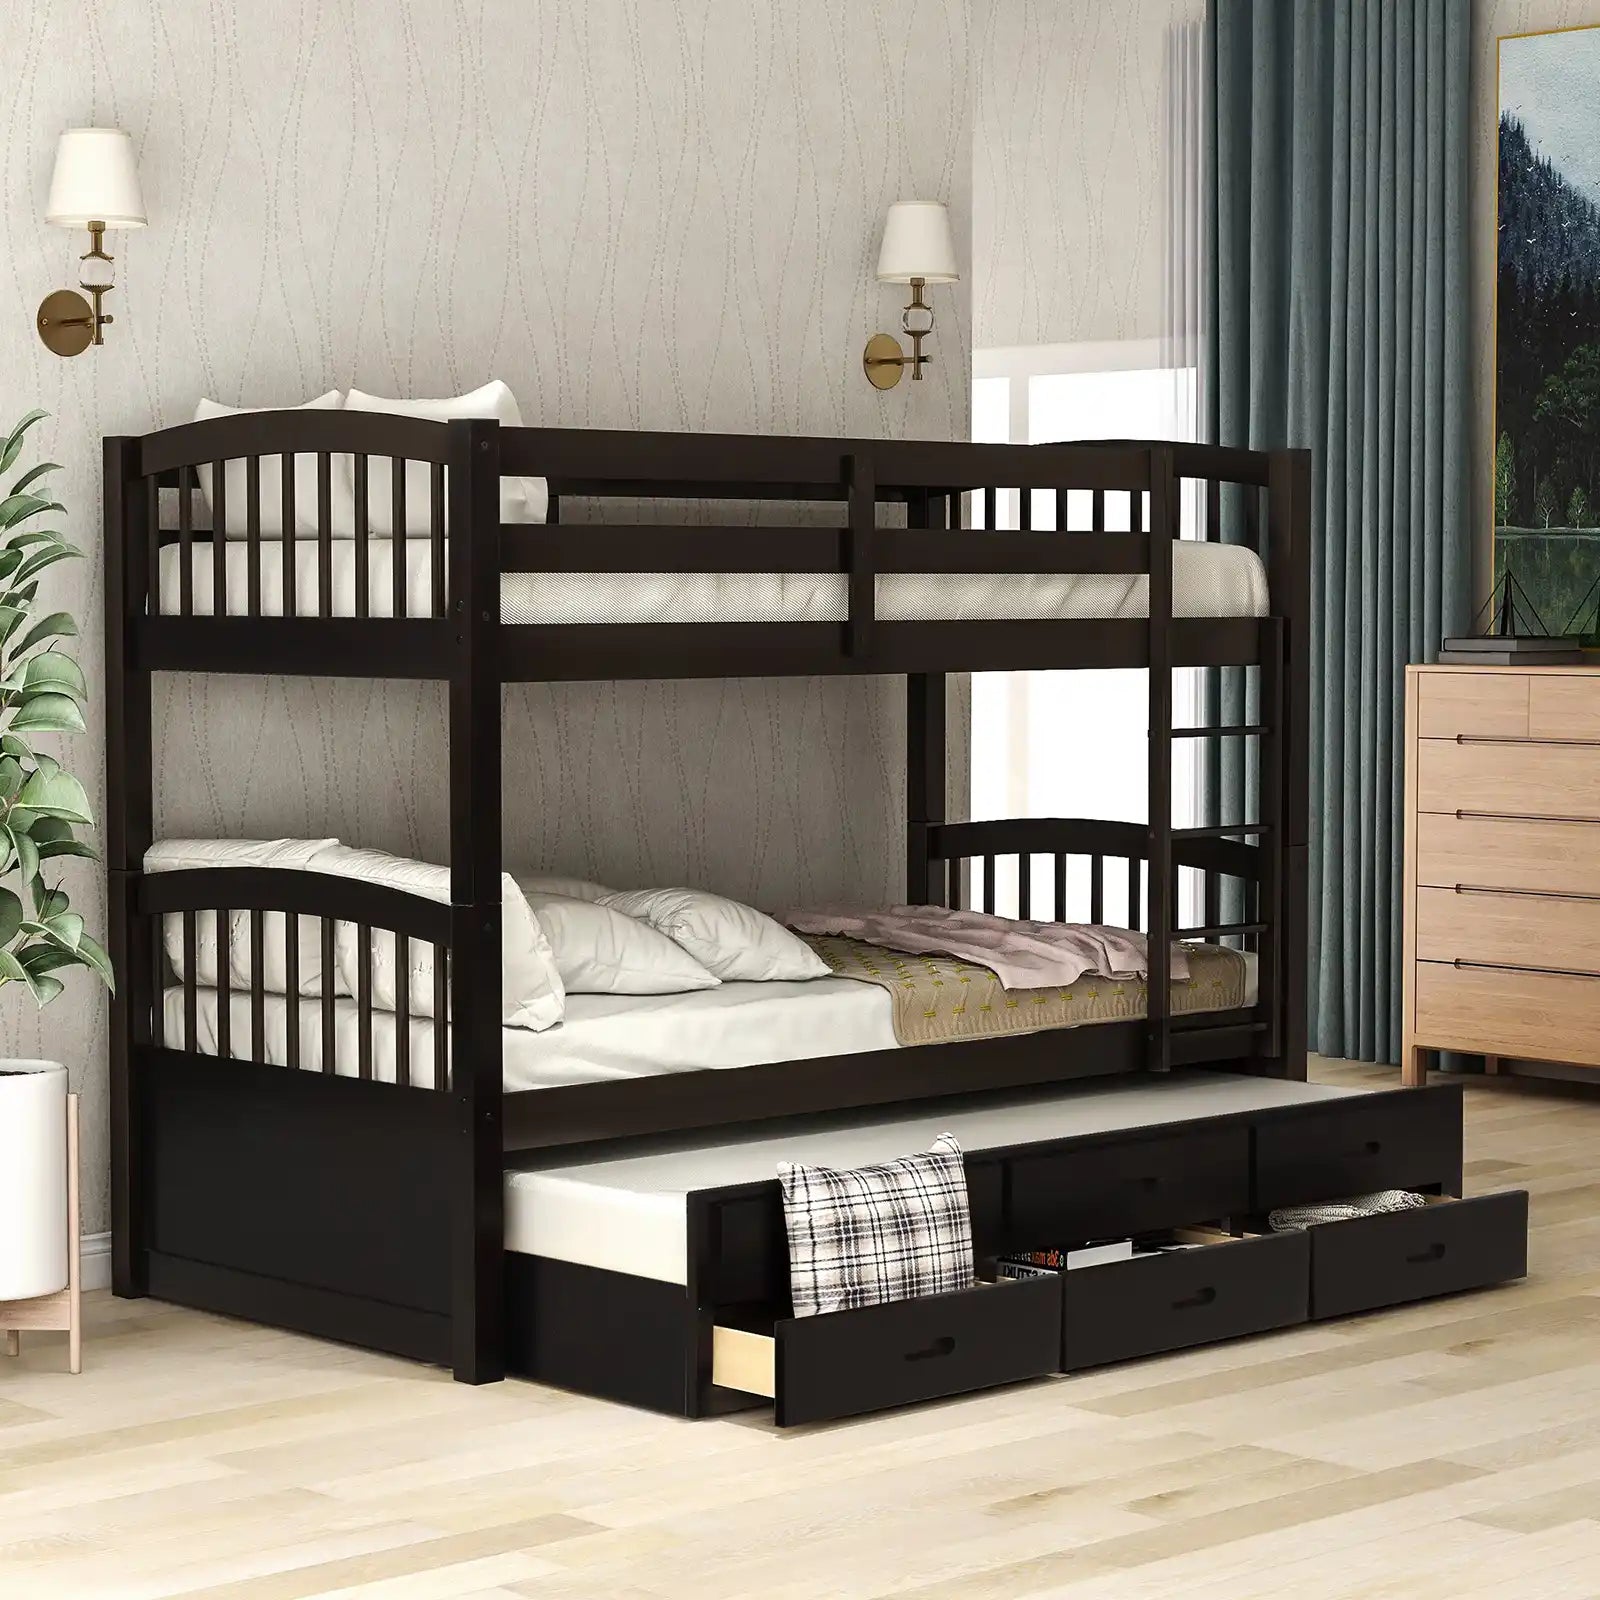 Litera de madera con dos camas individuales y dos camas individuales con cama nido y cajones 